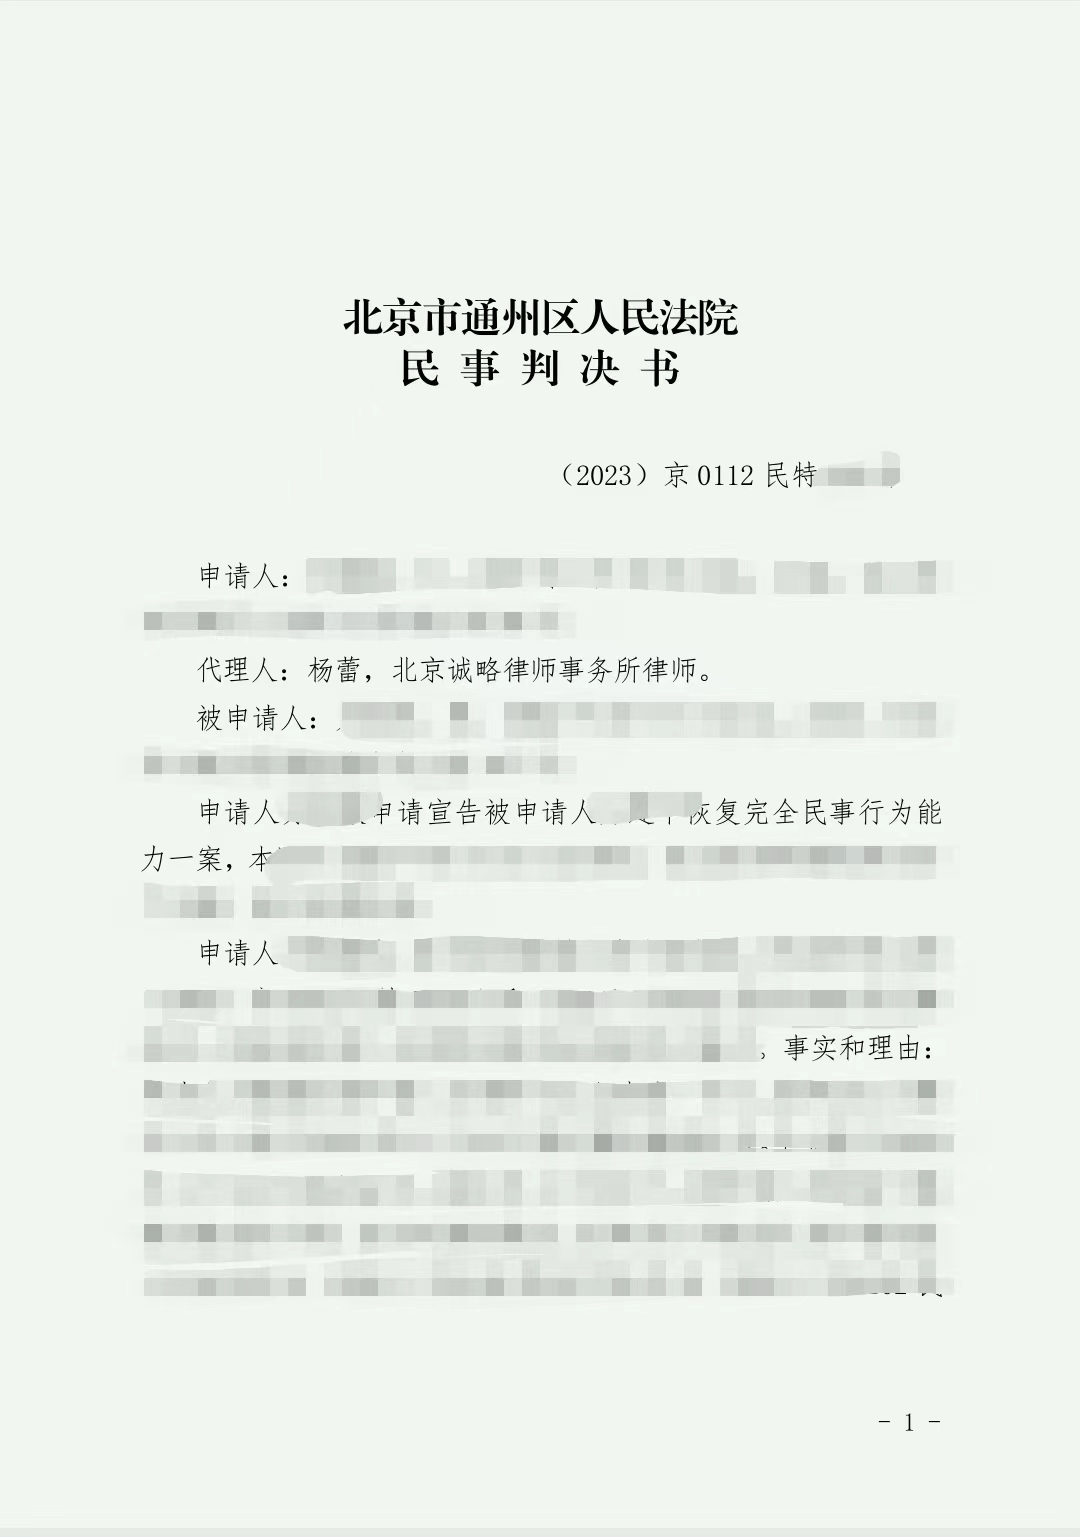 【北京市】方女士申请宣告自然人恢复完全民事行为能力特别程序一案